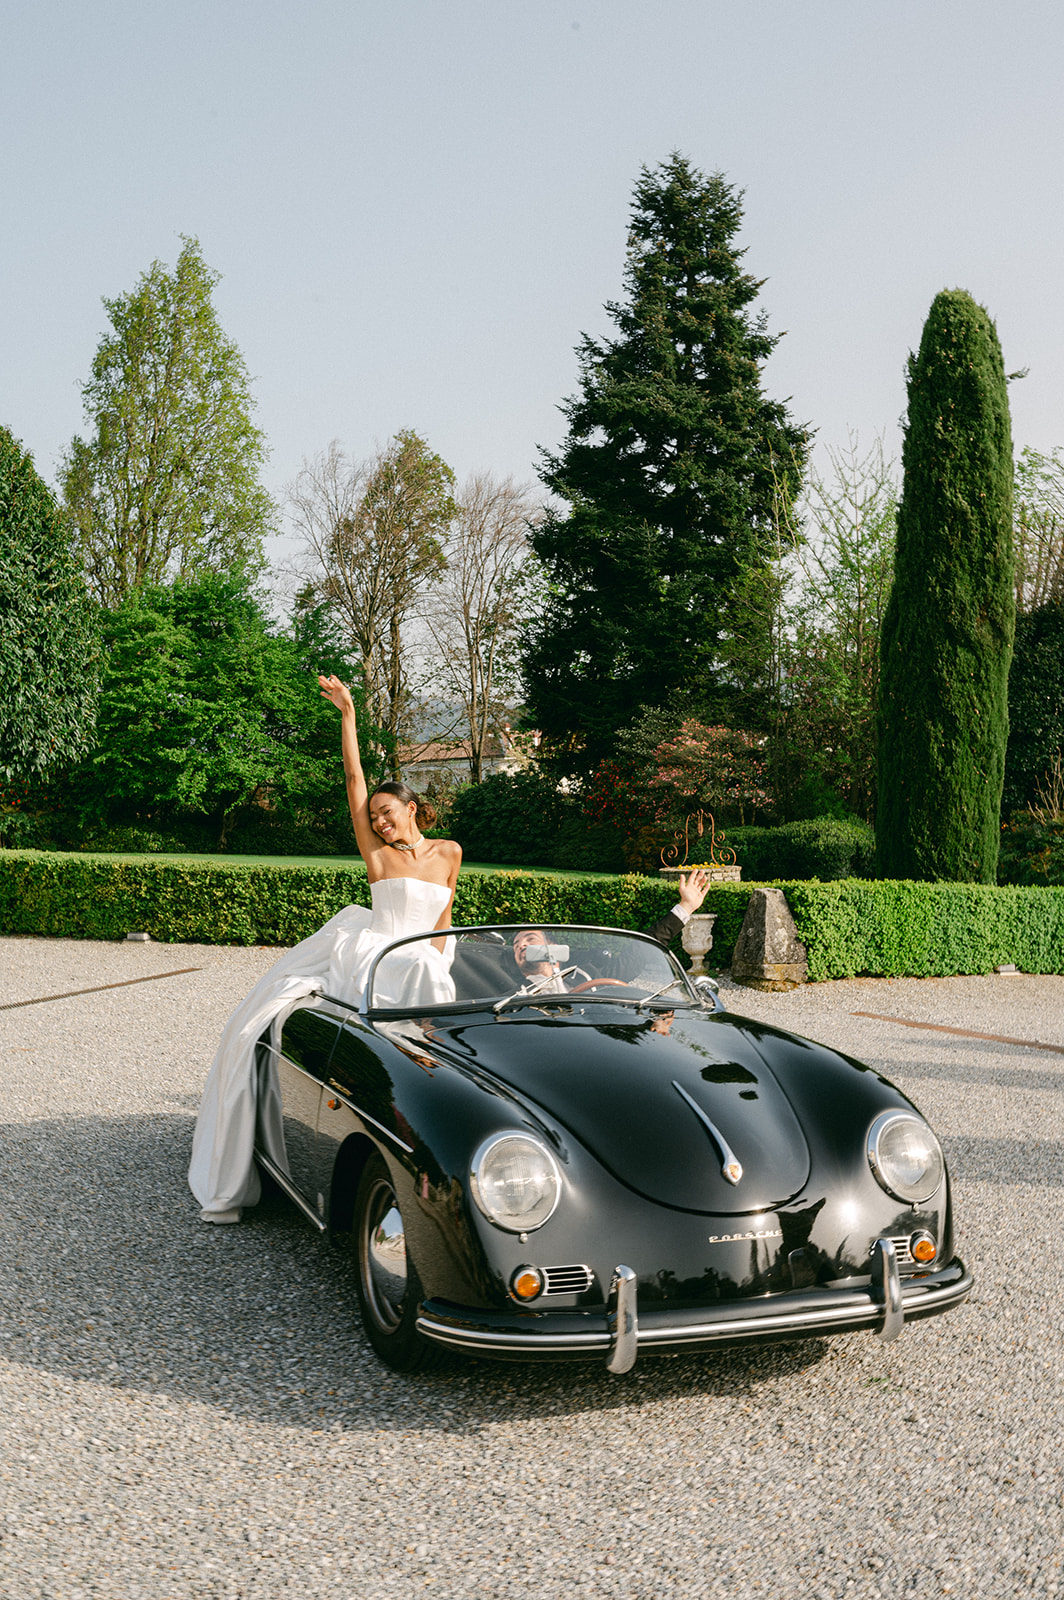 Bride and groom vintage car wedding photos at Villa Canton in Italy.